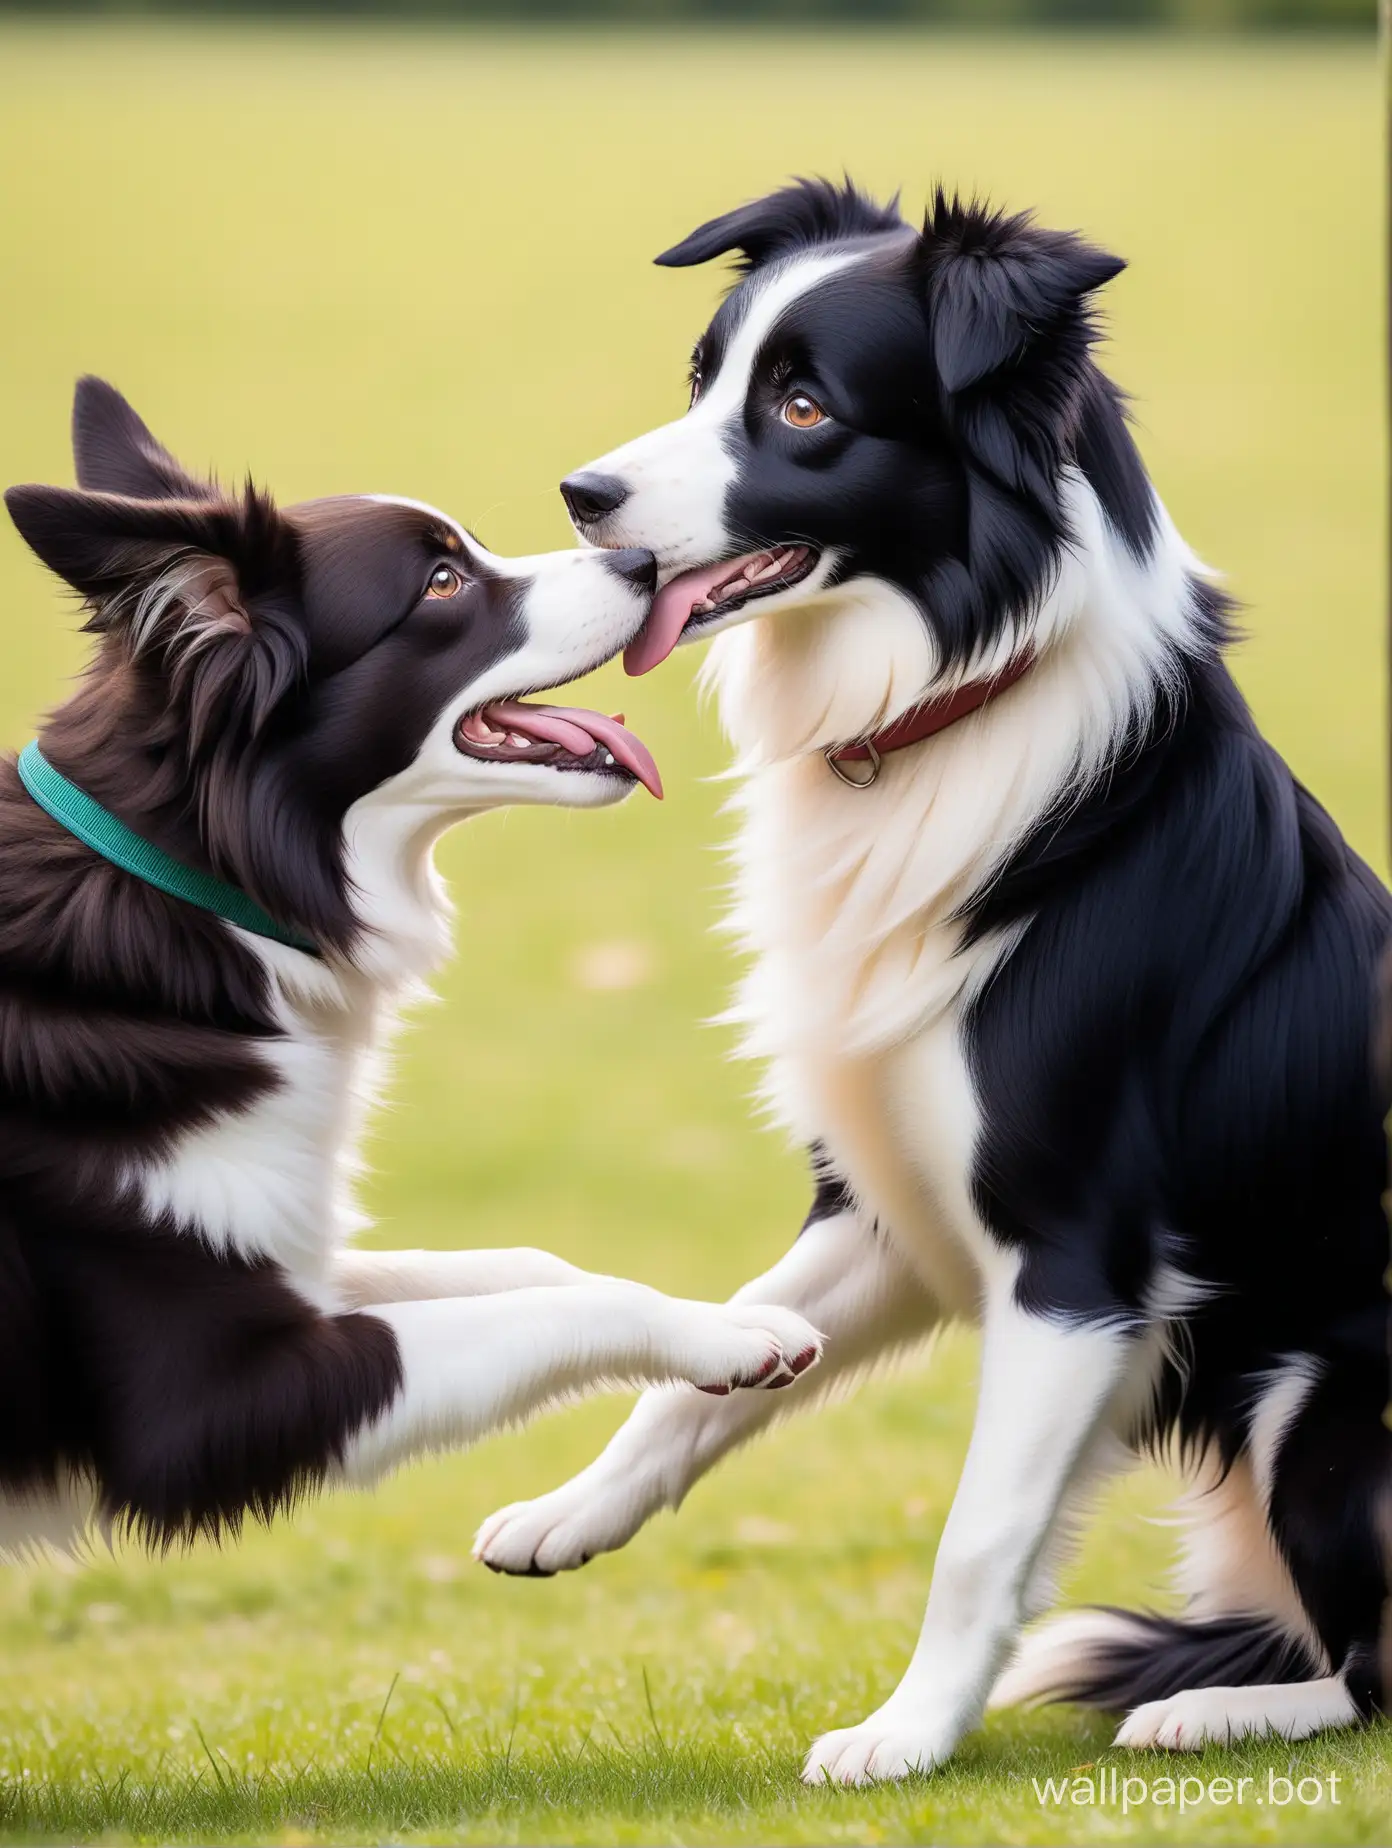 una border collie con la oreja derecha hacia abajo ojos marrones y que este jugando con otro perro y que la border collie sea de color blanco y negro
